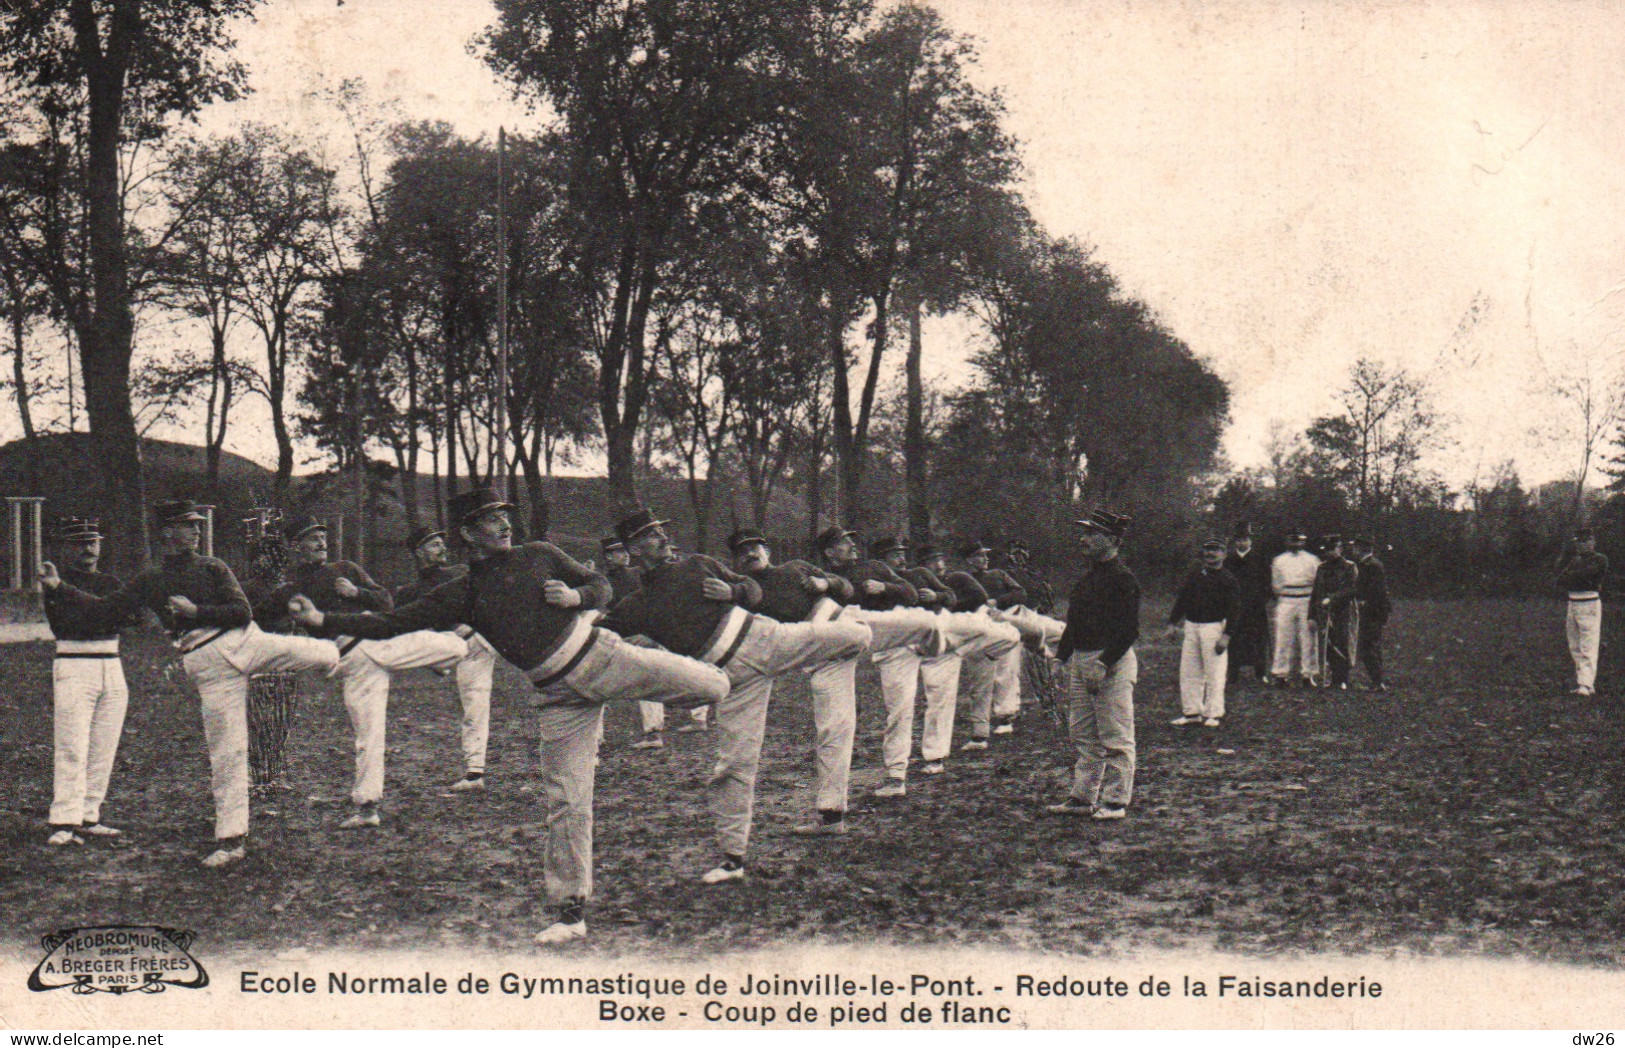 Ecole Normale De Gymnastique Joinville-le-Pont, Redoute De La Faisanderie, Boxe Française: Coup De Pied De Flan - Boksen